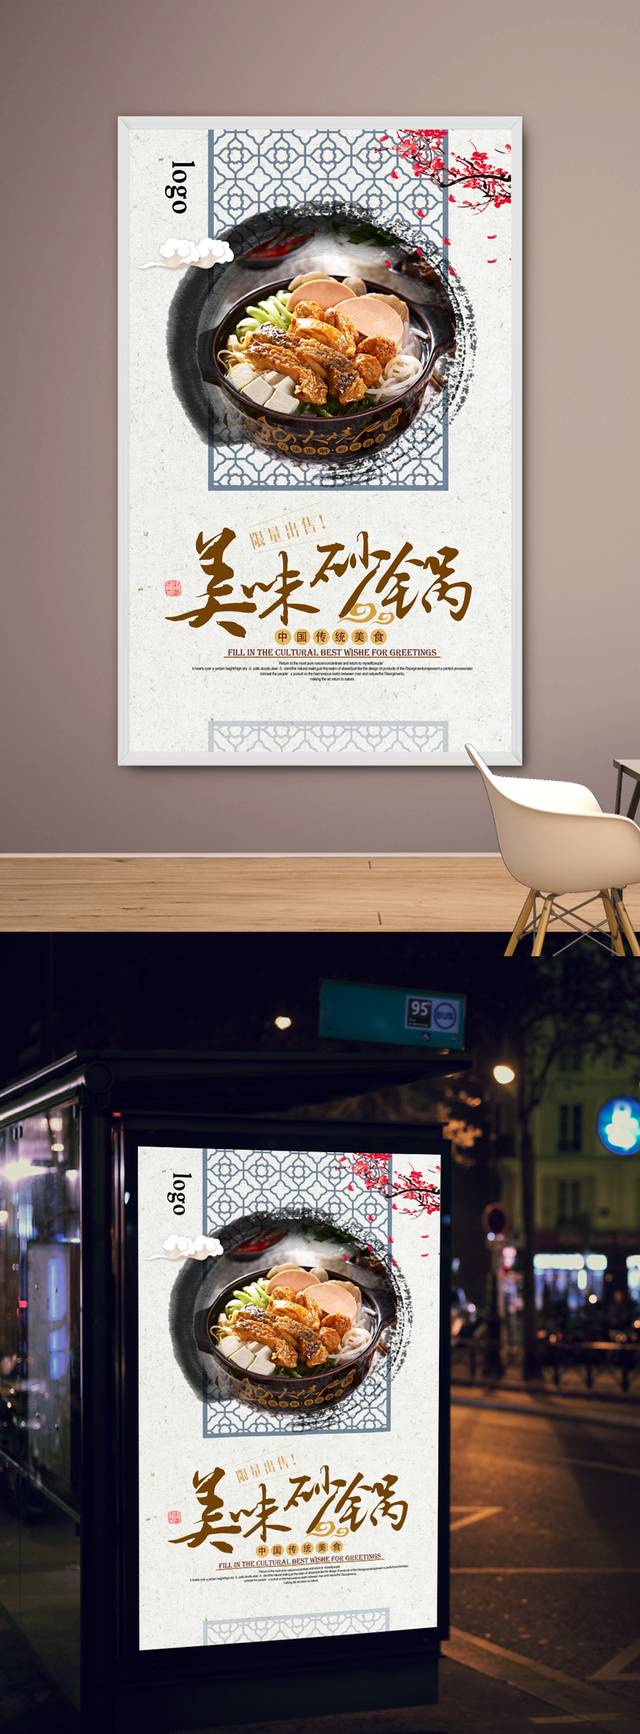 清新古典砂锅宣传海报设计